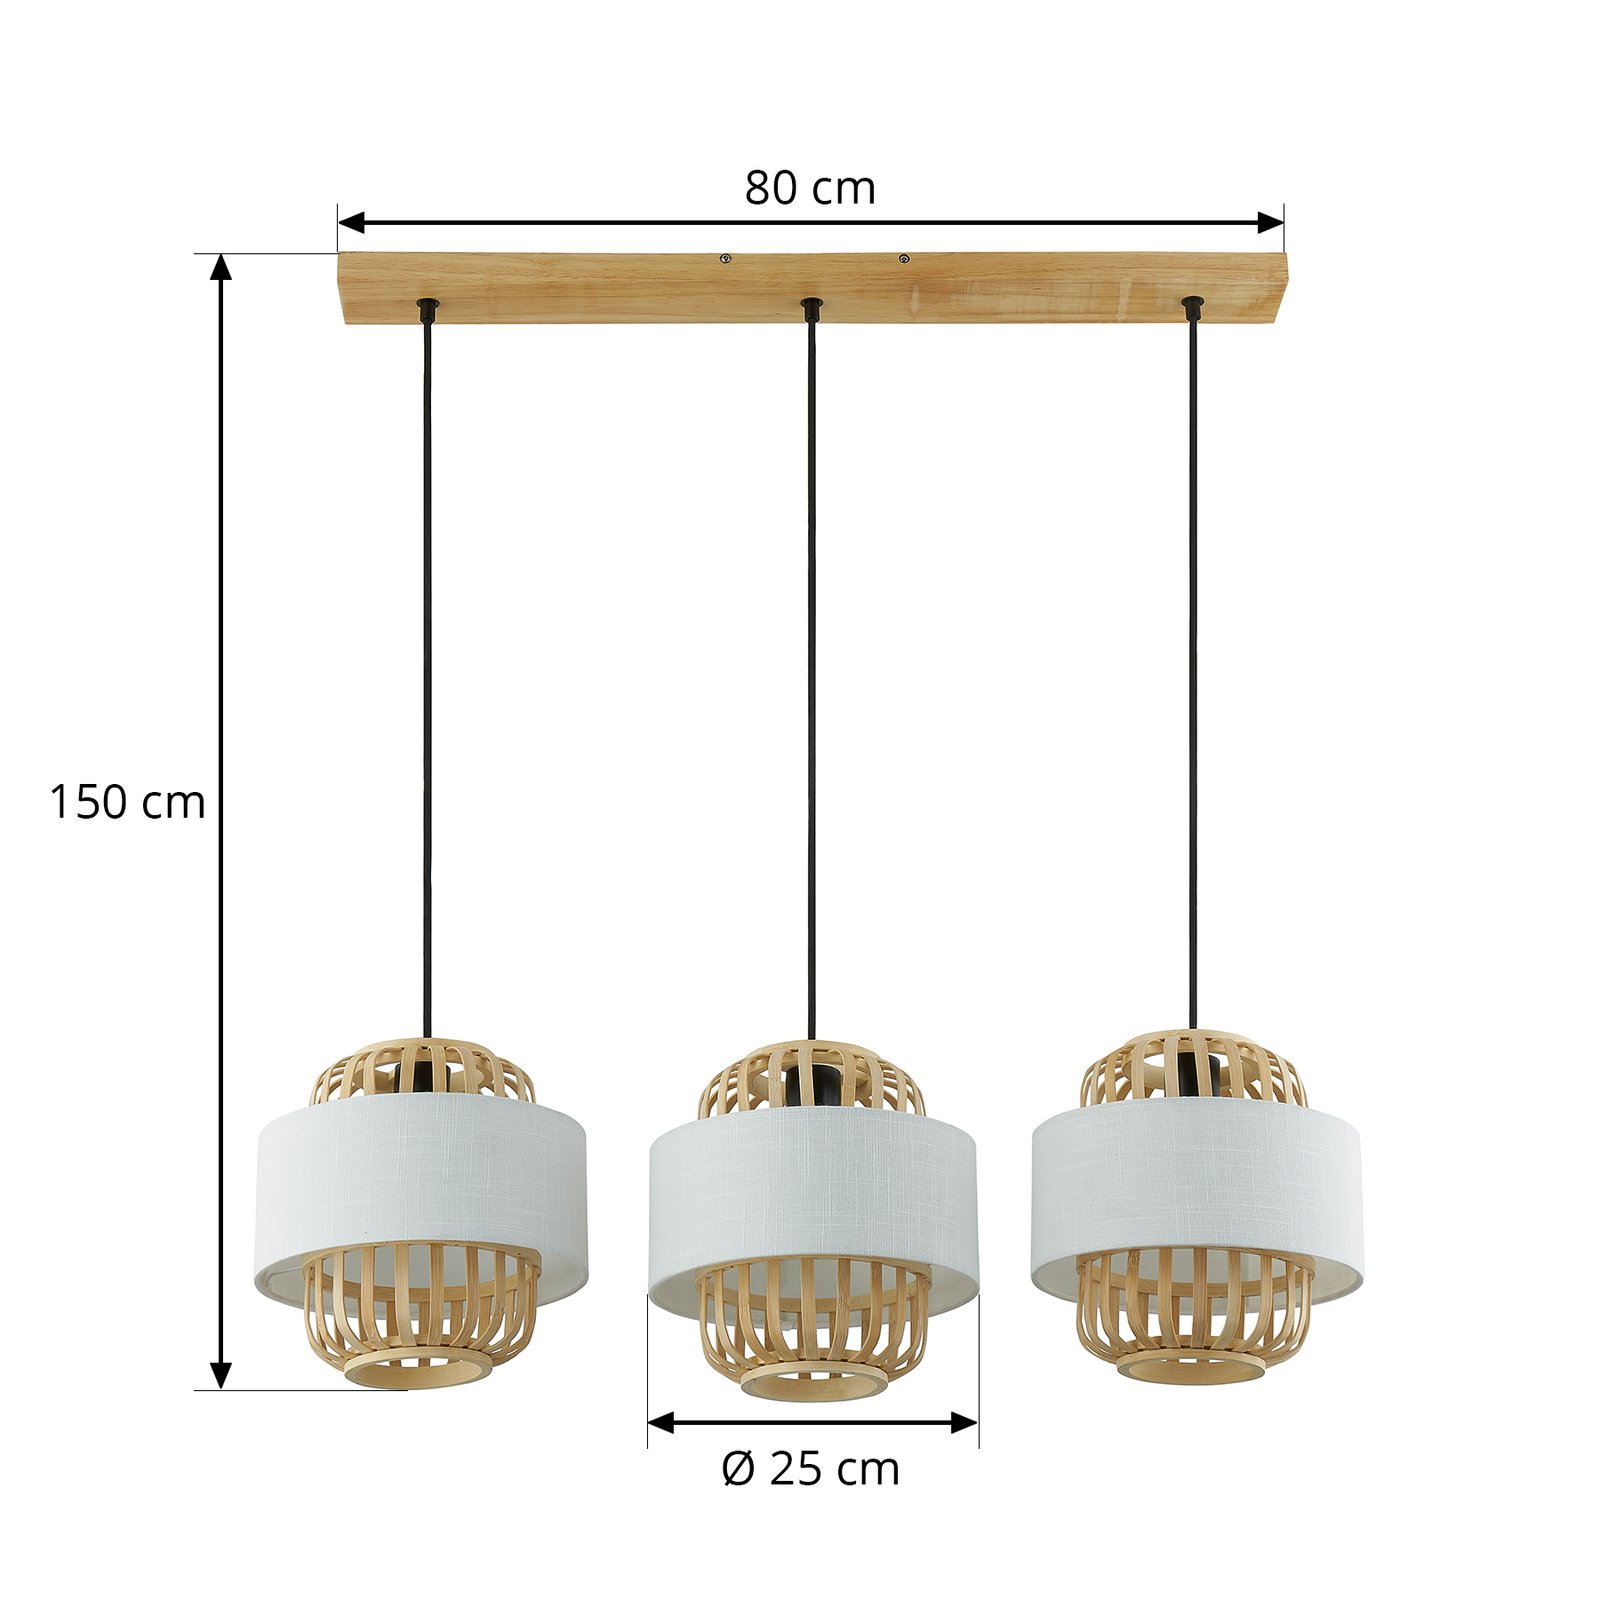 Lindby hanglamp Louella, bamboe, 80 cm, 3-lamps, E27